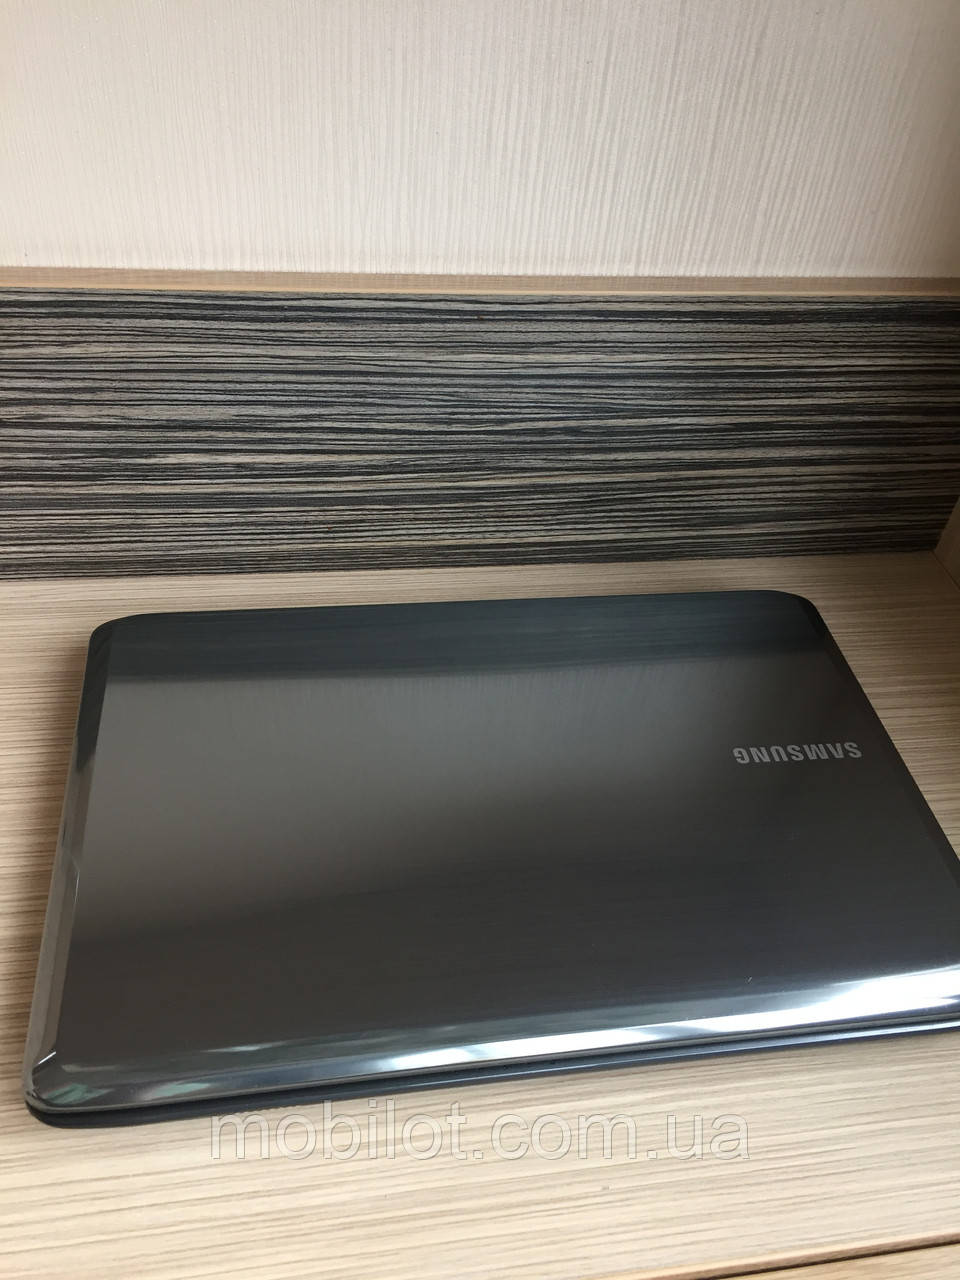 Ноутбук Samsung R523  (NR-2546)Нет в наличии